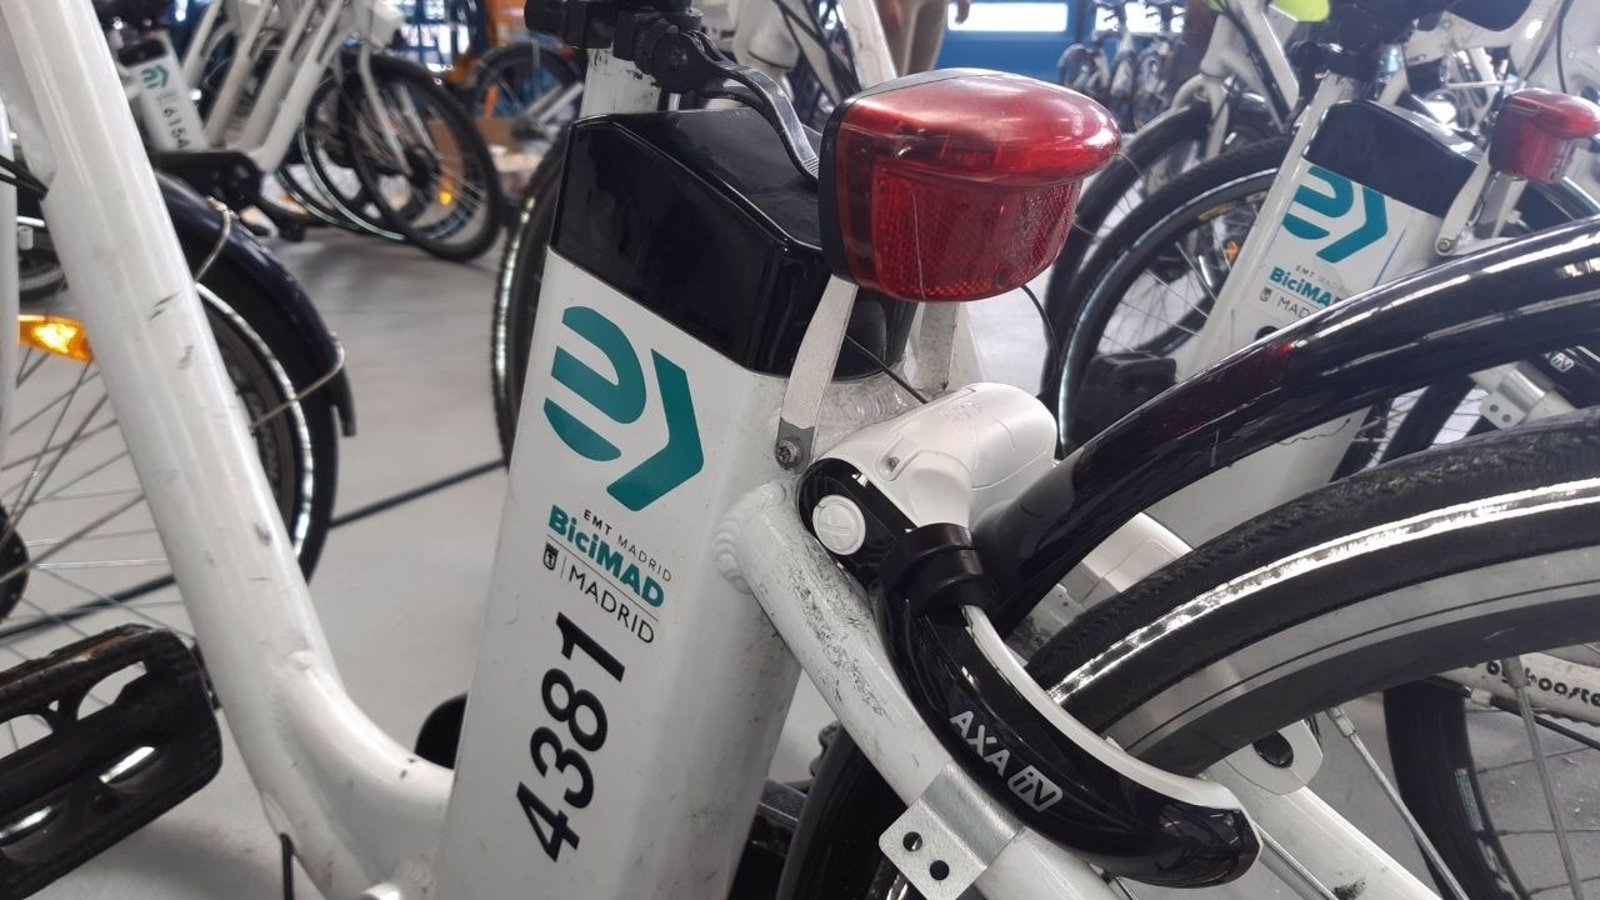 Bicimad renueva bicicletas que incorporan GPS, pantalla, ruedas antipinchazos y nuevo anclaje